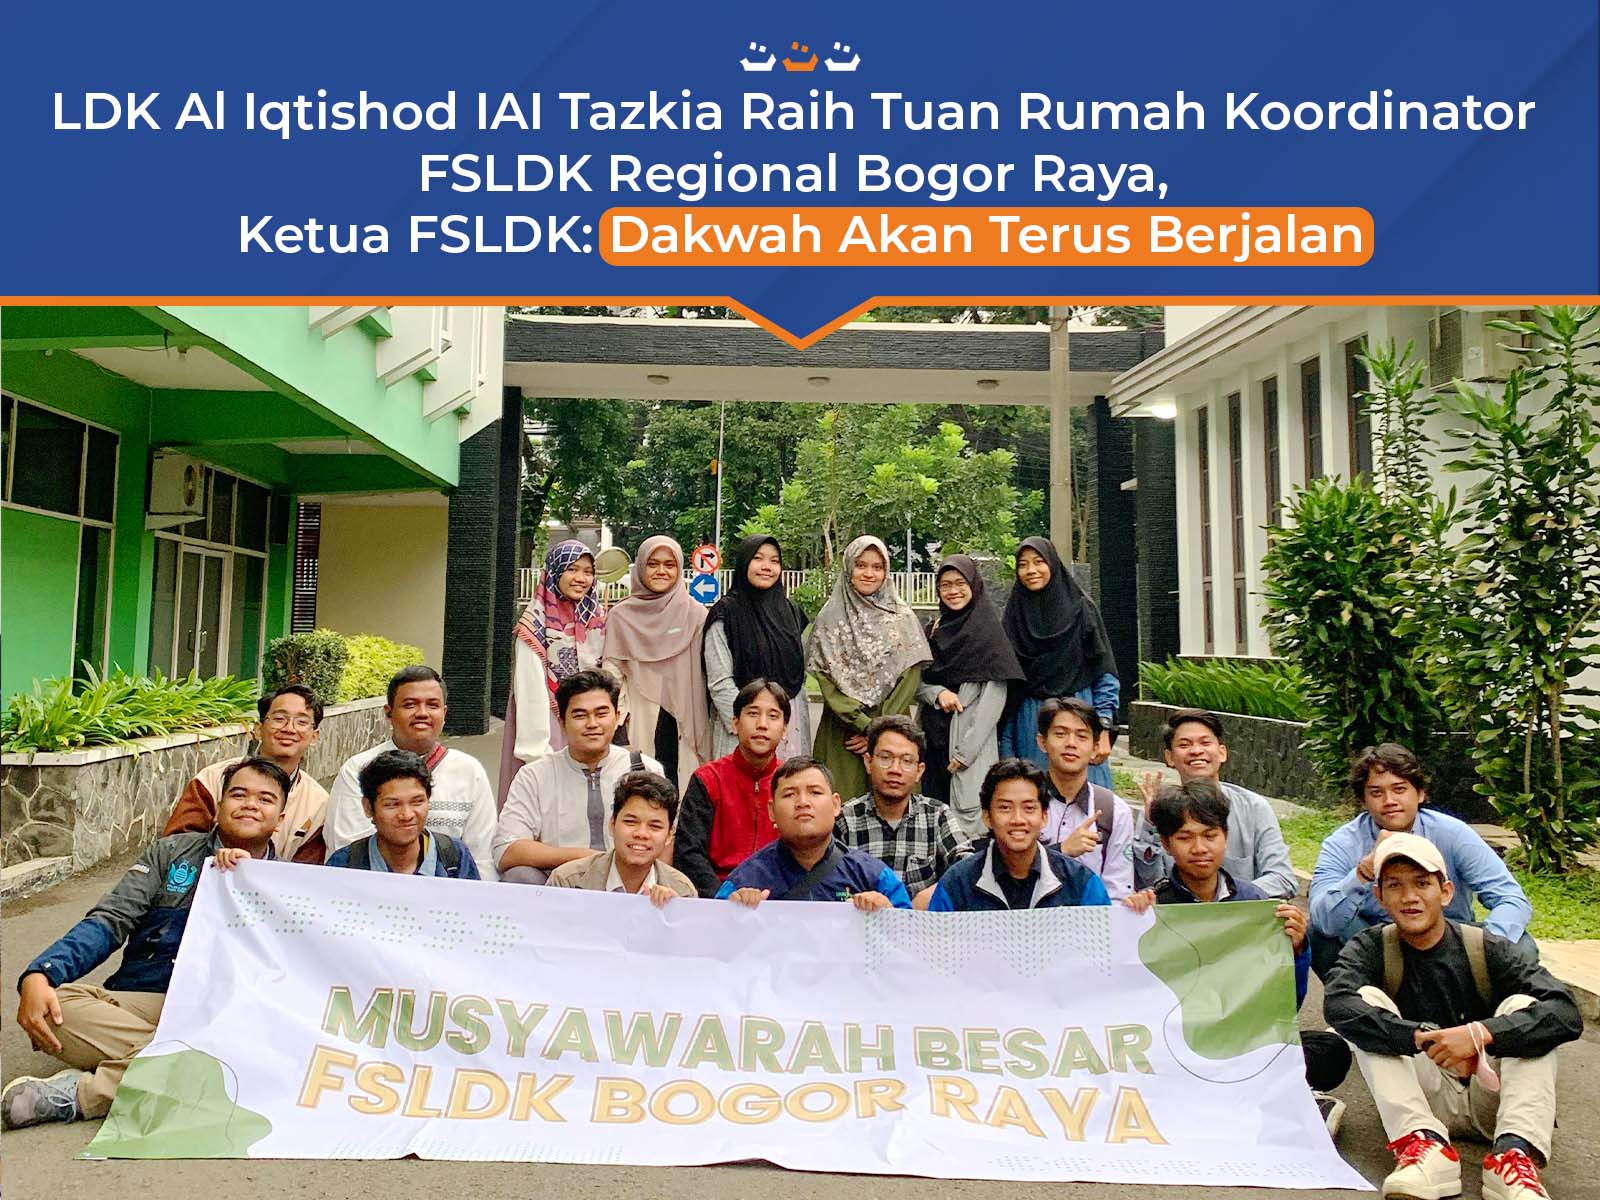 LDK Al Iqtishod IAI Tazkia Raih Tuan Rumah Koordinator FSLDK Regional Bogor Raya, Ketua FSLDK: Dakwah Akan Terus Berjalan